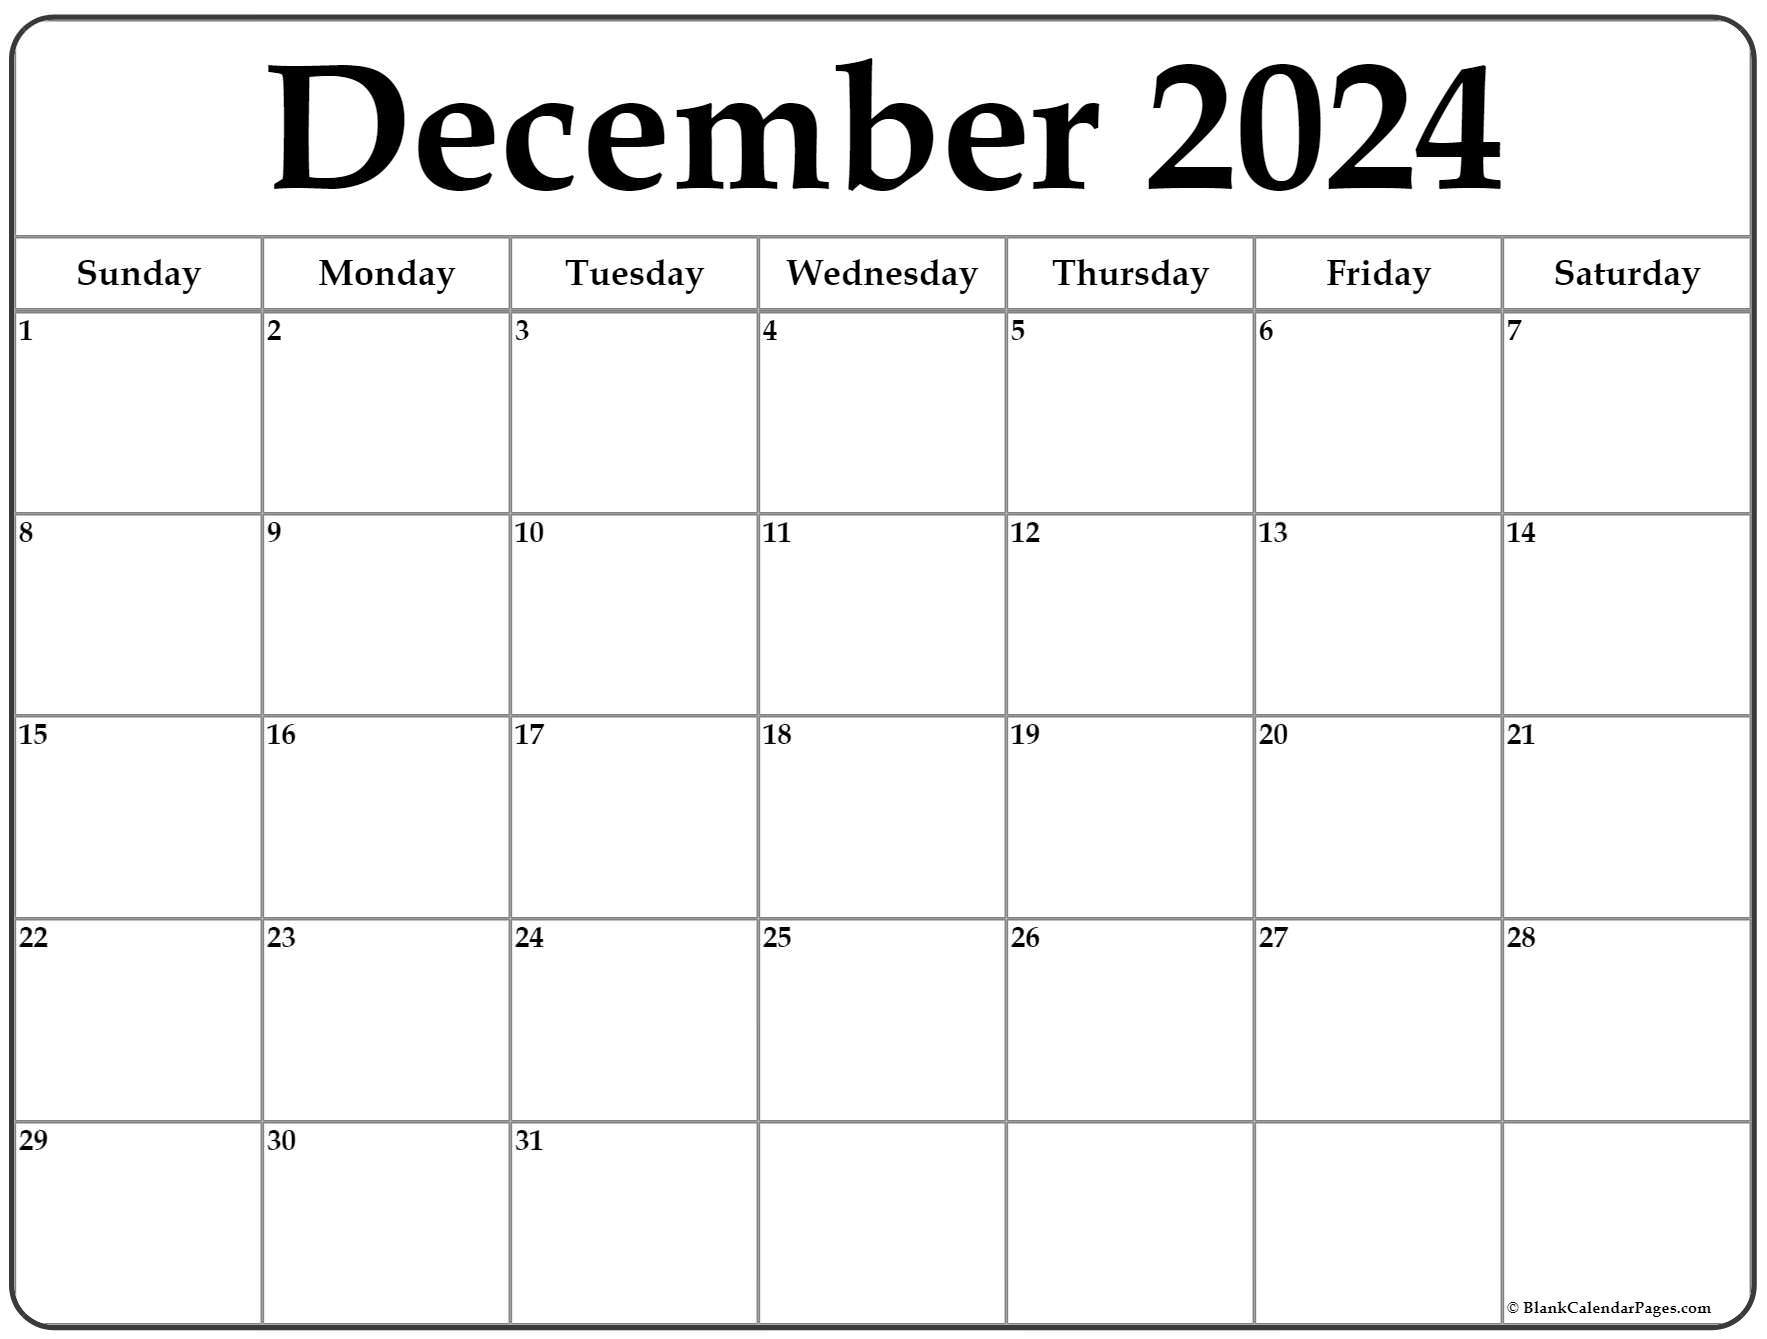 Decmeber 2024 Calendar Ynez Analise